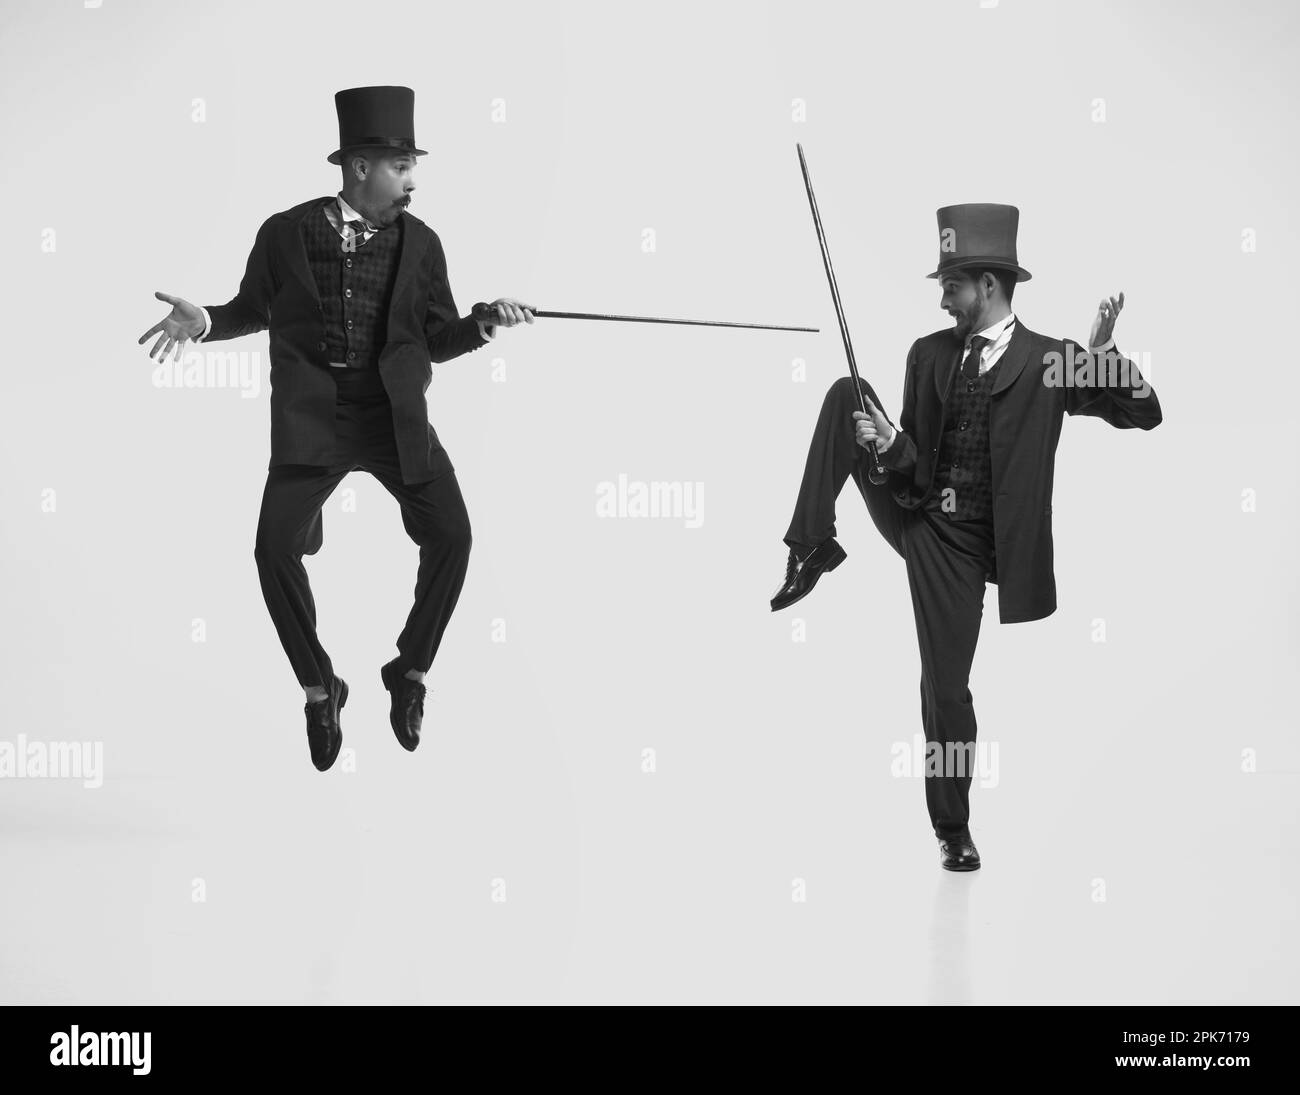 Schwarz-weißes Porträt von zwei Herren, die klassische Anzüge tragen, springen und kämpfen mit Stöcken. An die Kindheit erinnert. Schwarzweiß Stockfoto